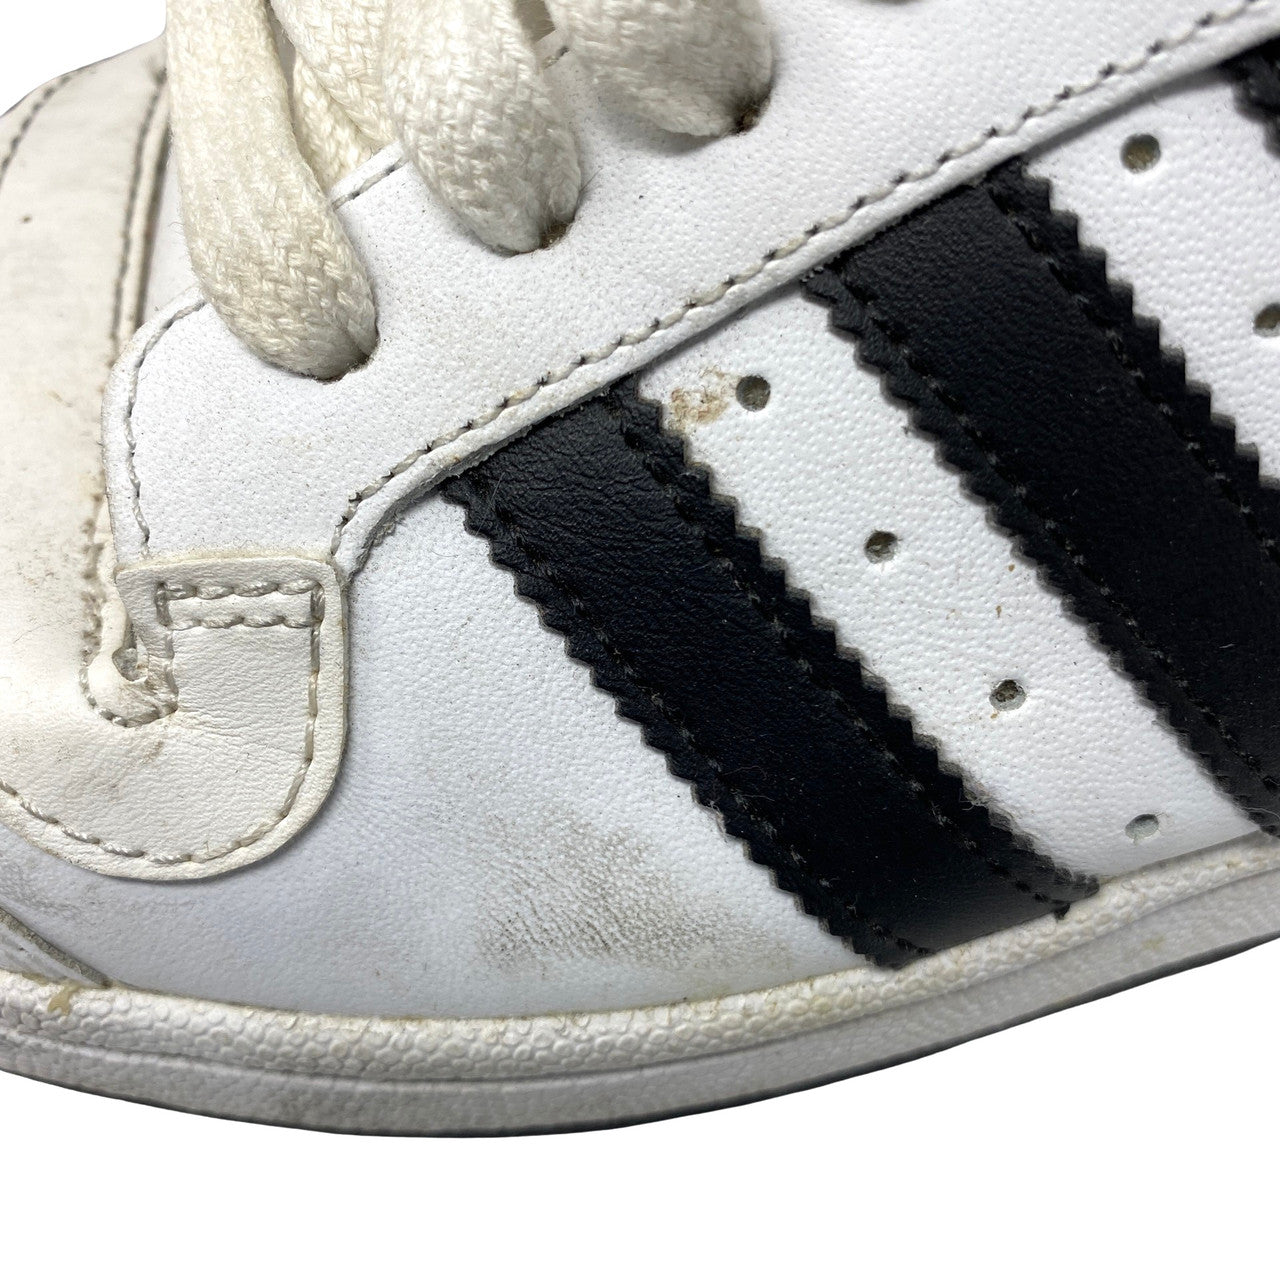 Vintage Adidas Top Ten High Top Sneakers-Detail3